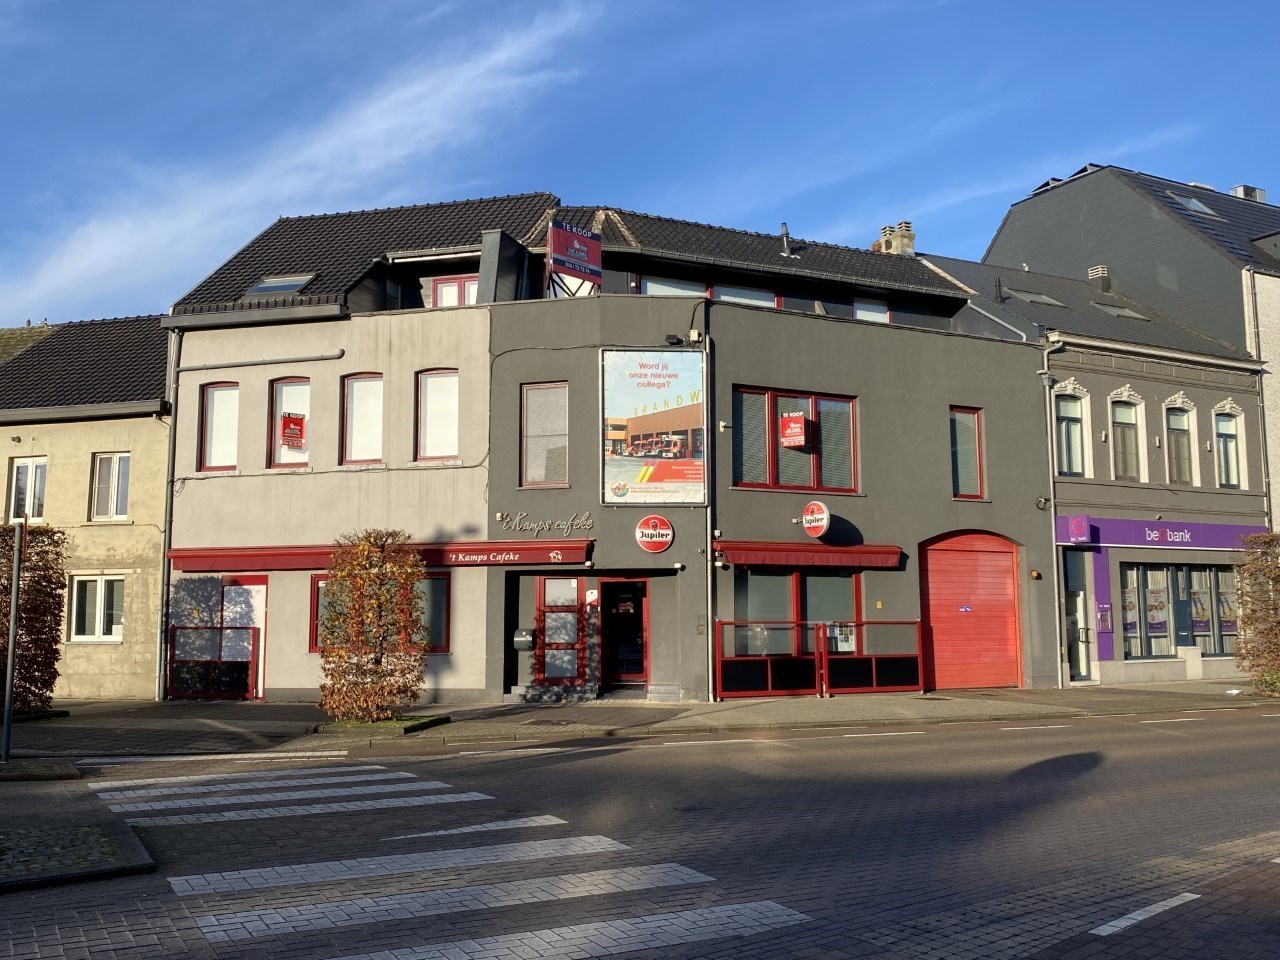 Woning met gelijkvloerse handelsruimte in centrum Leopoldsburg 